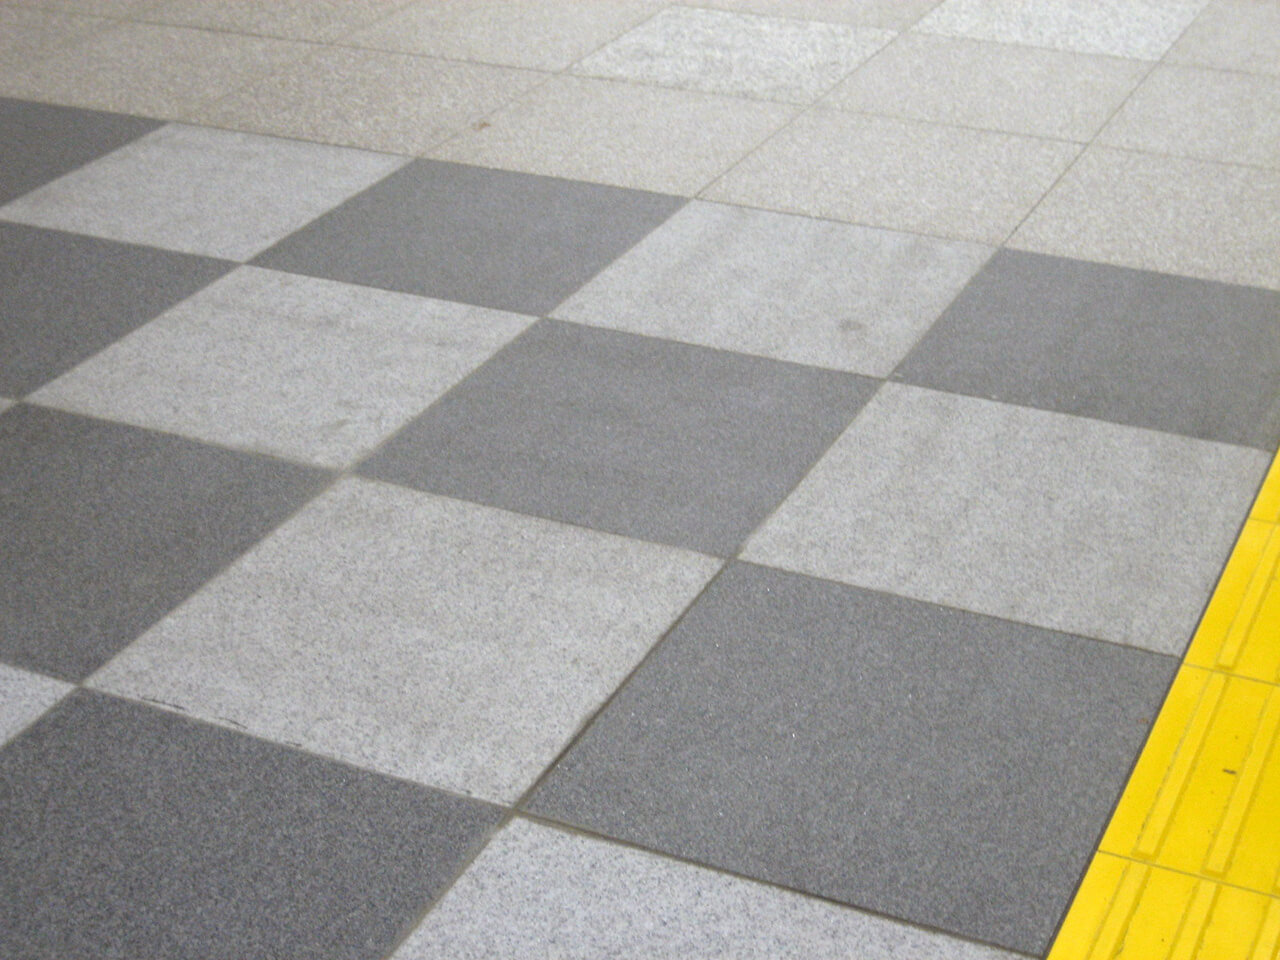 屋外からJR東日本東戸塚駅西口へ繋がるコンコース床に使用されているハイブリッドストーン アベイラス アンプロップの拡大図